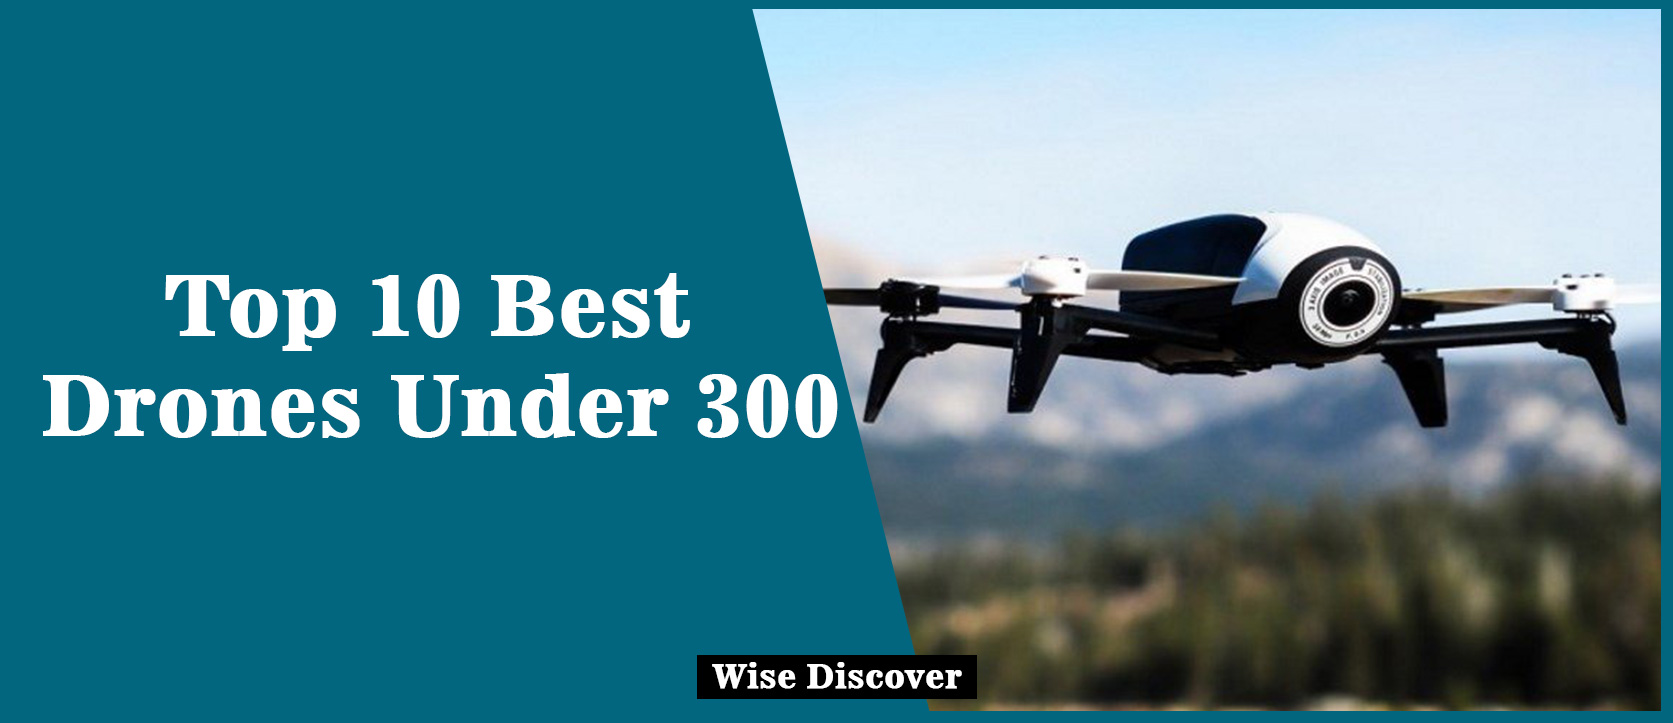 Top-10-Best-Drones-Under-300